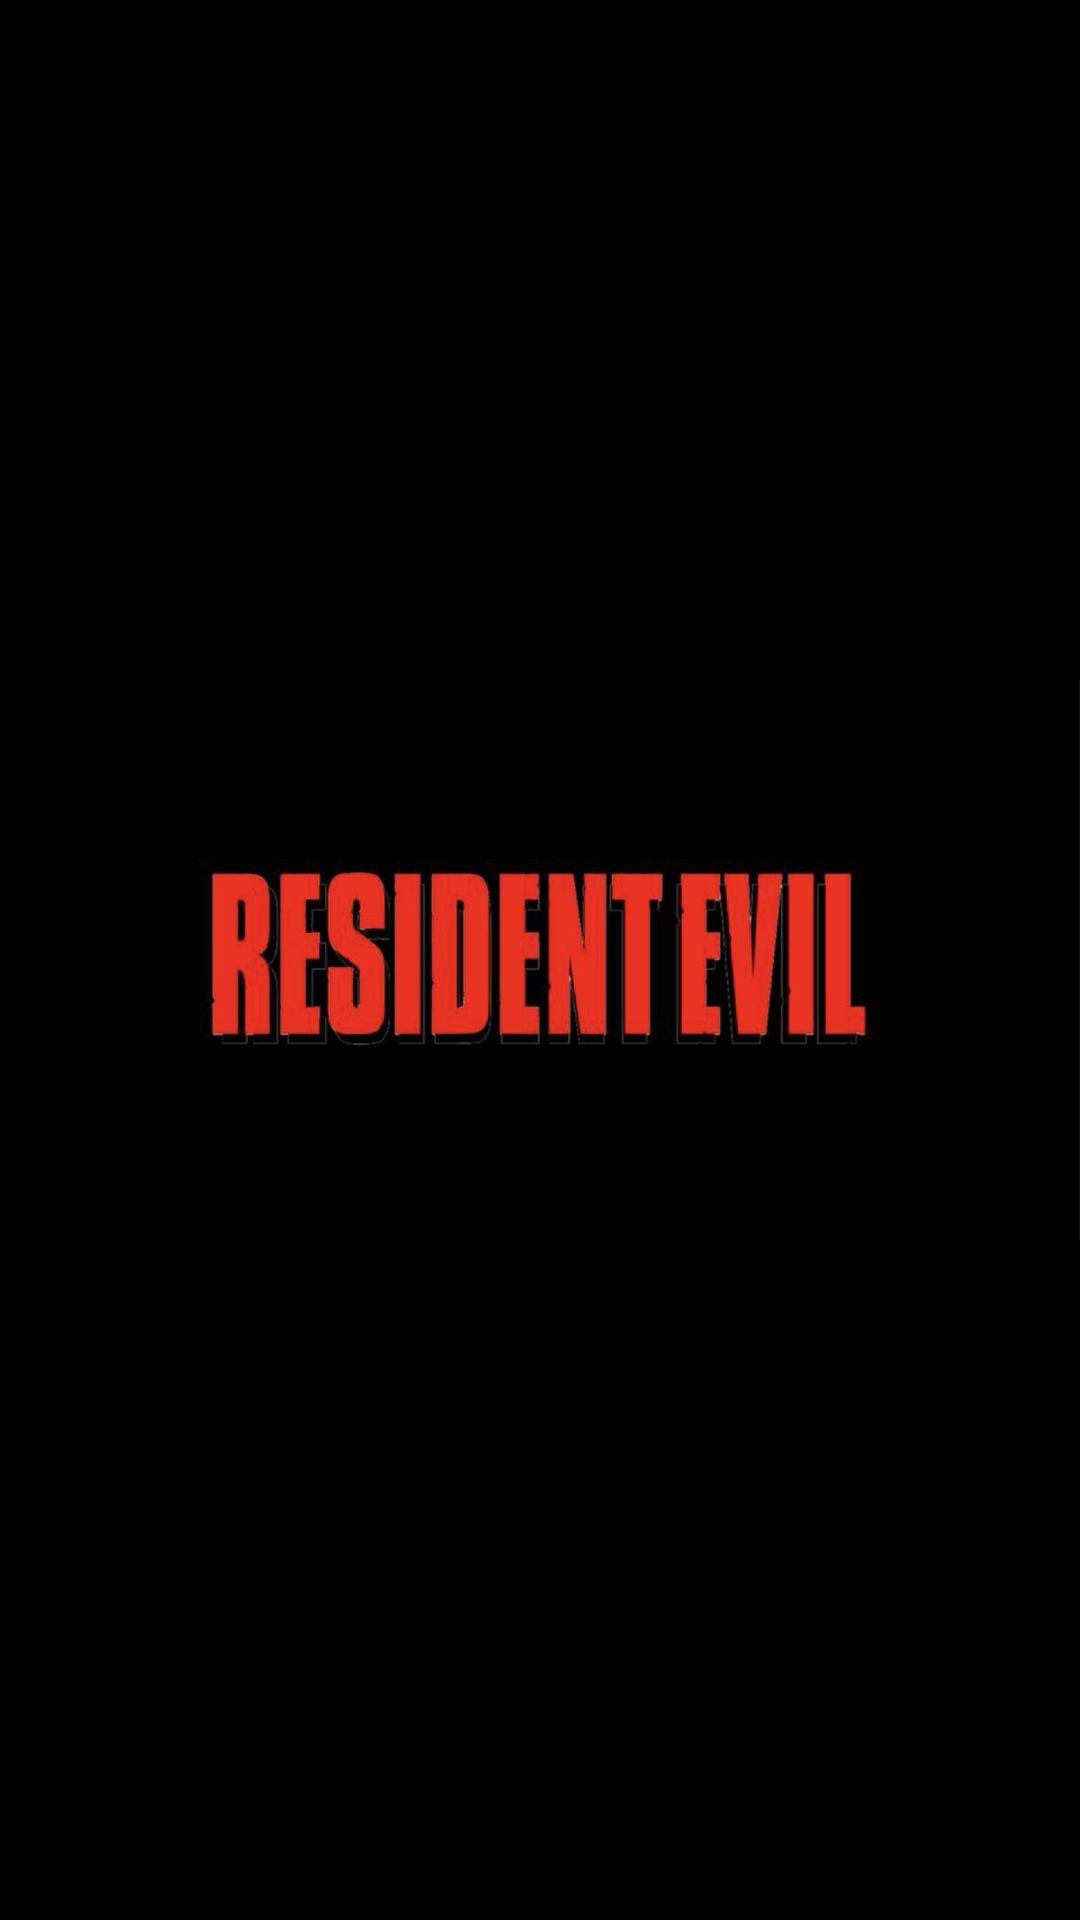 Постер фильма Обитель зла: Раккун Сити | Resident Evil: Welcome to Raccoon City